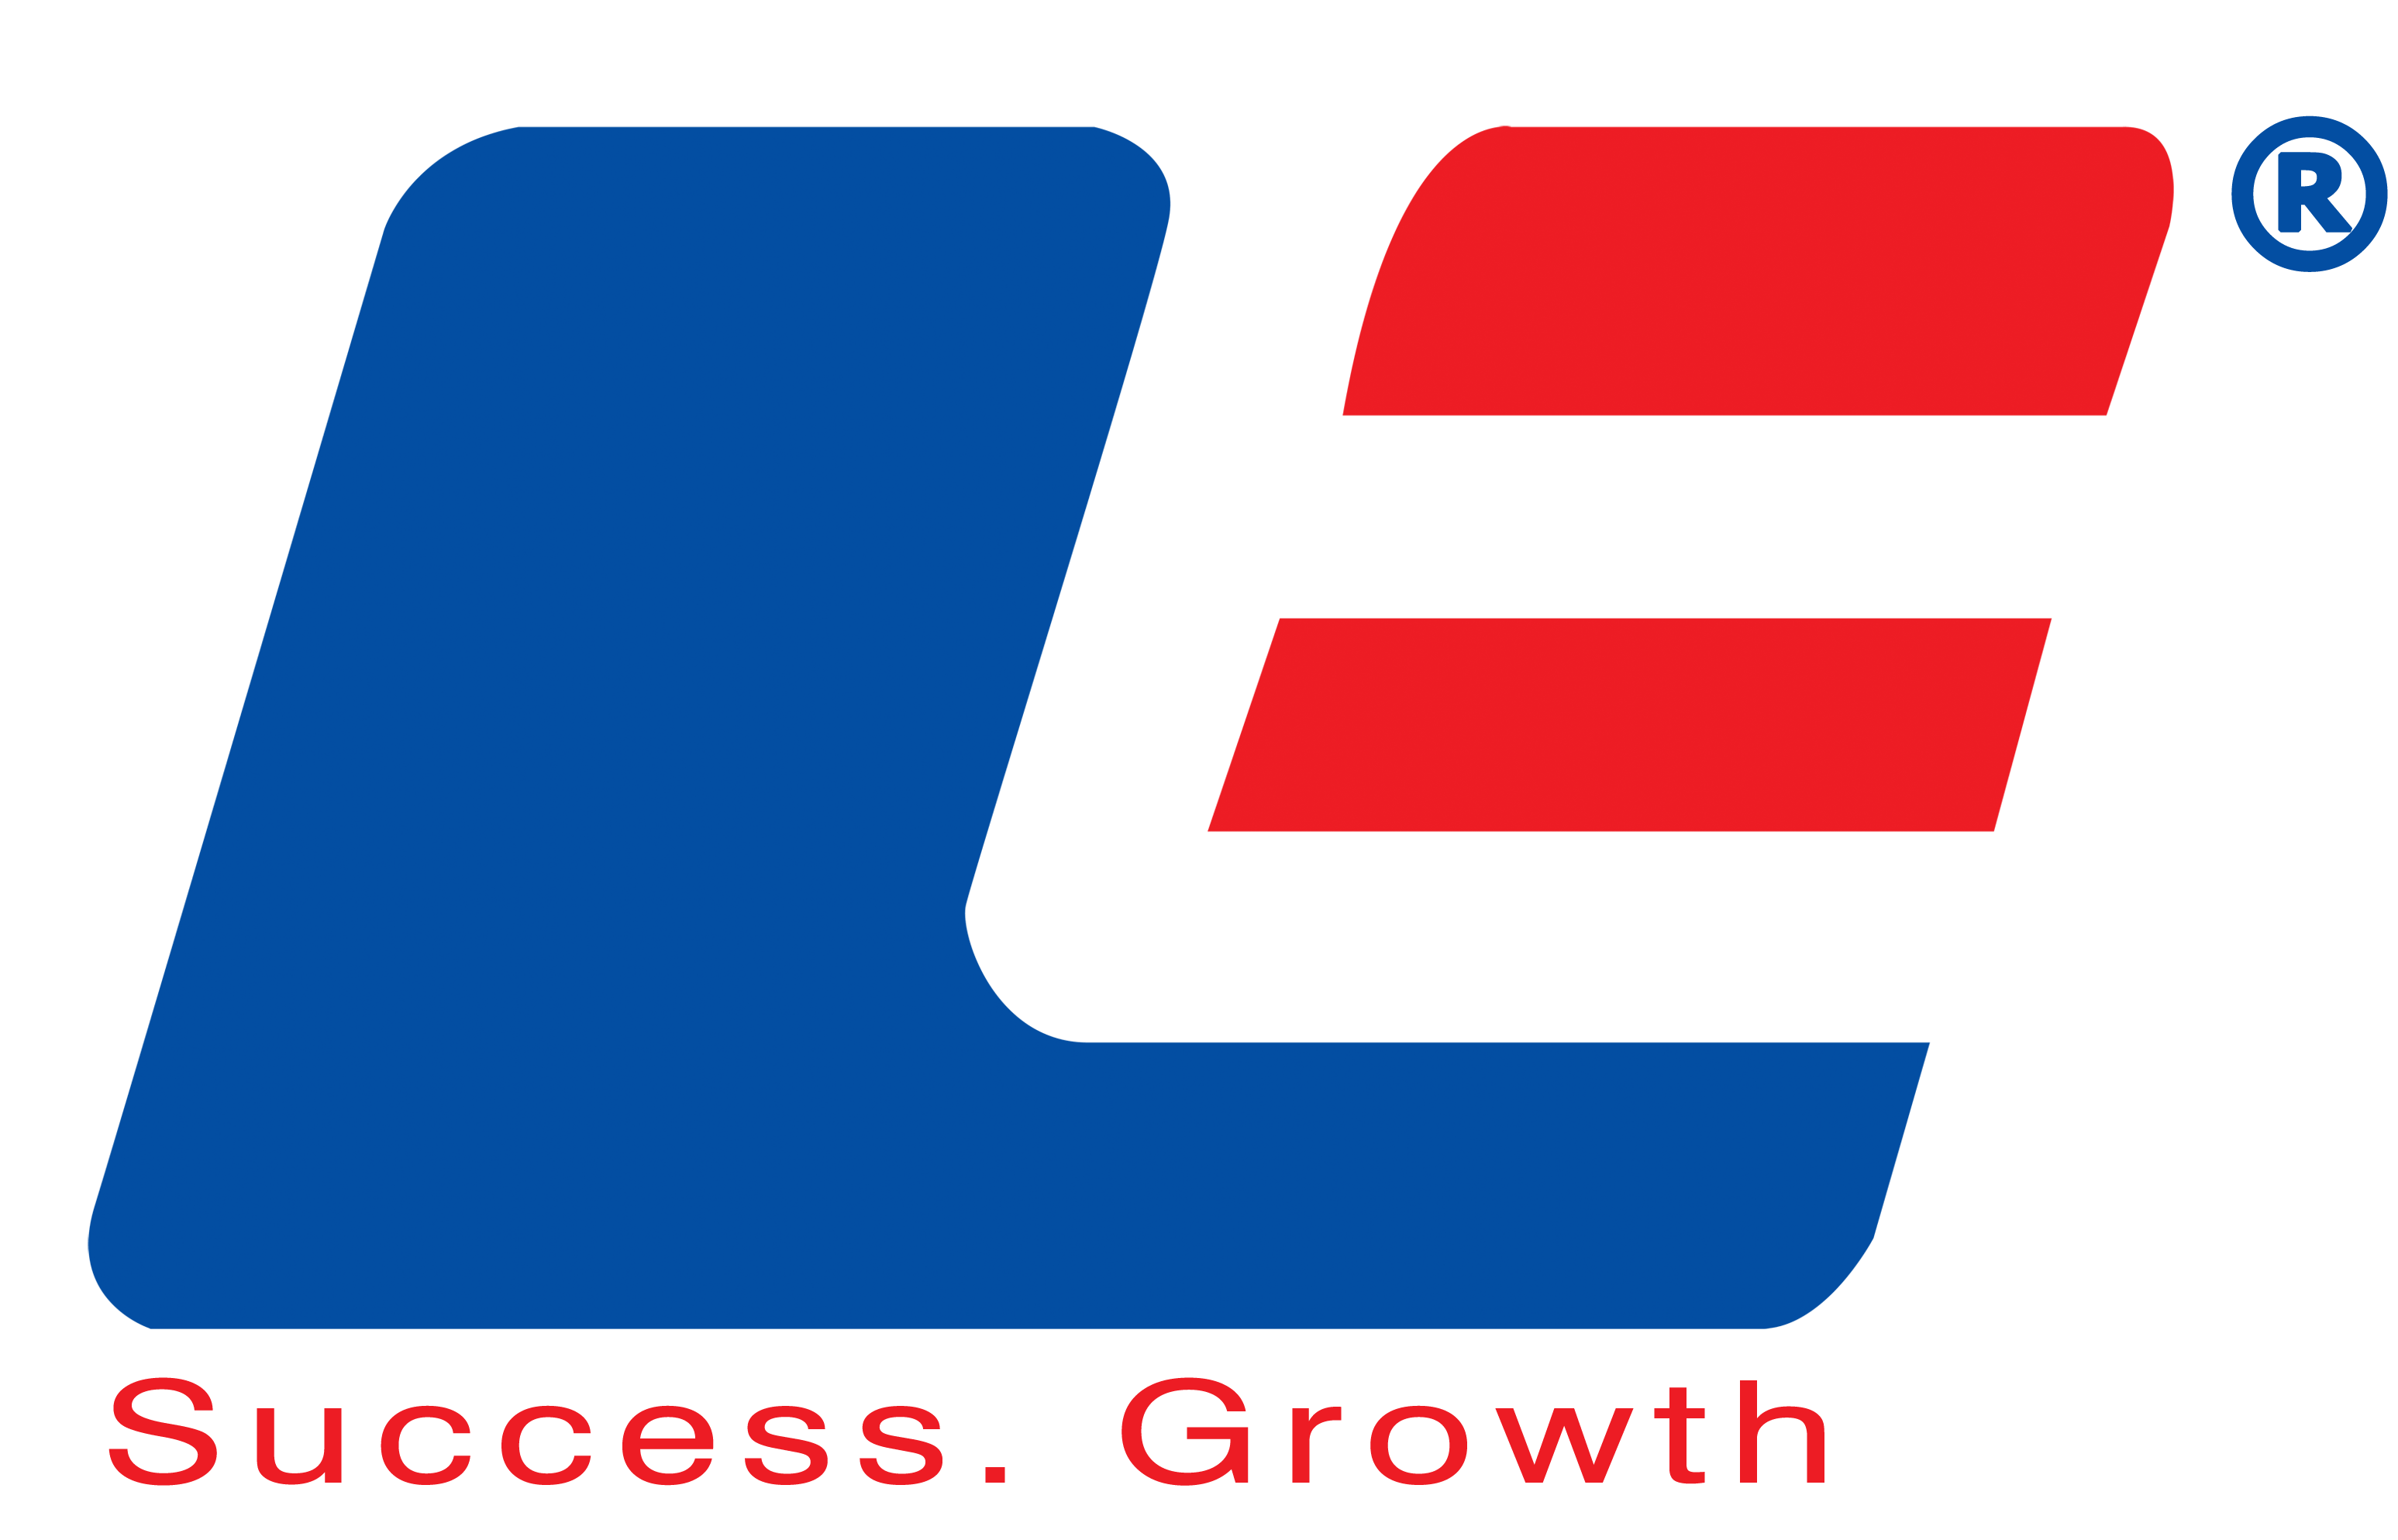 UE Logo - UE new logo